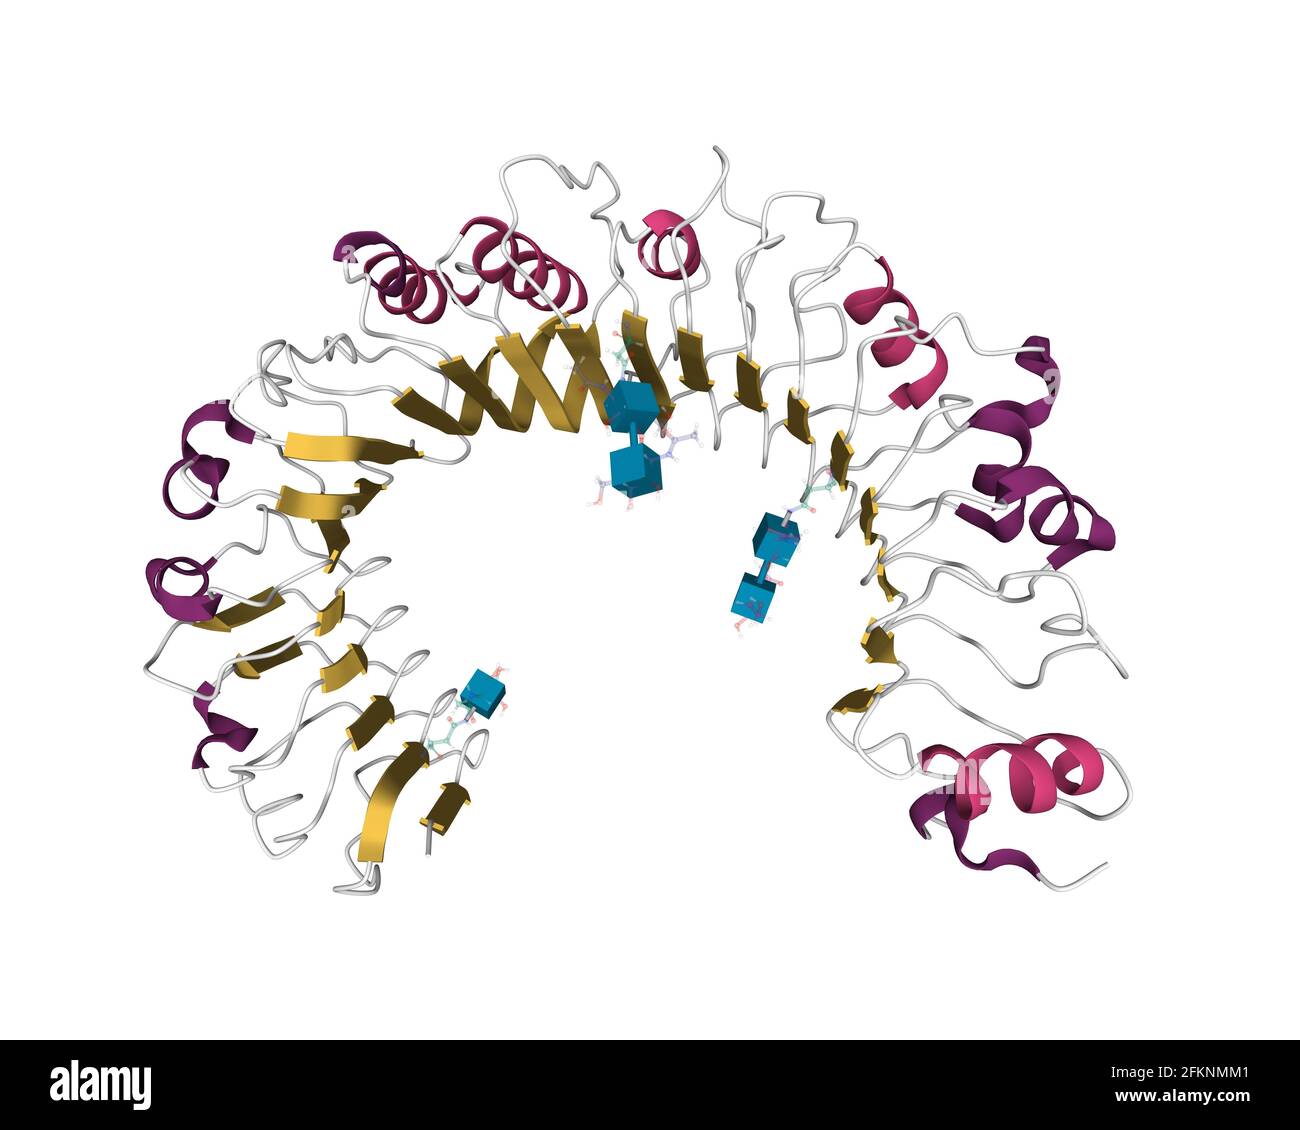 Struktur des menschlichen toll-like Receptor 1 (TLR1), 3D-Cartoon-Modell mit unterschiedlich farbigen sekundären Strukturelementen, weißer Hintergrund Stockfoto